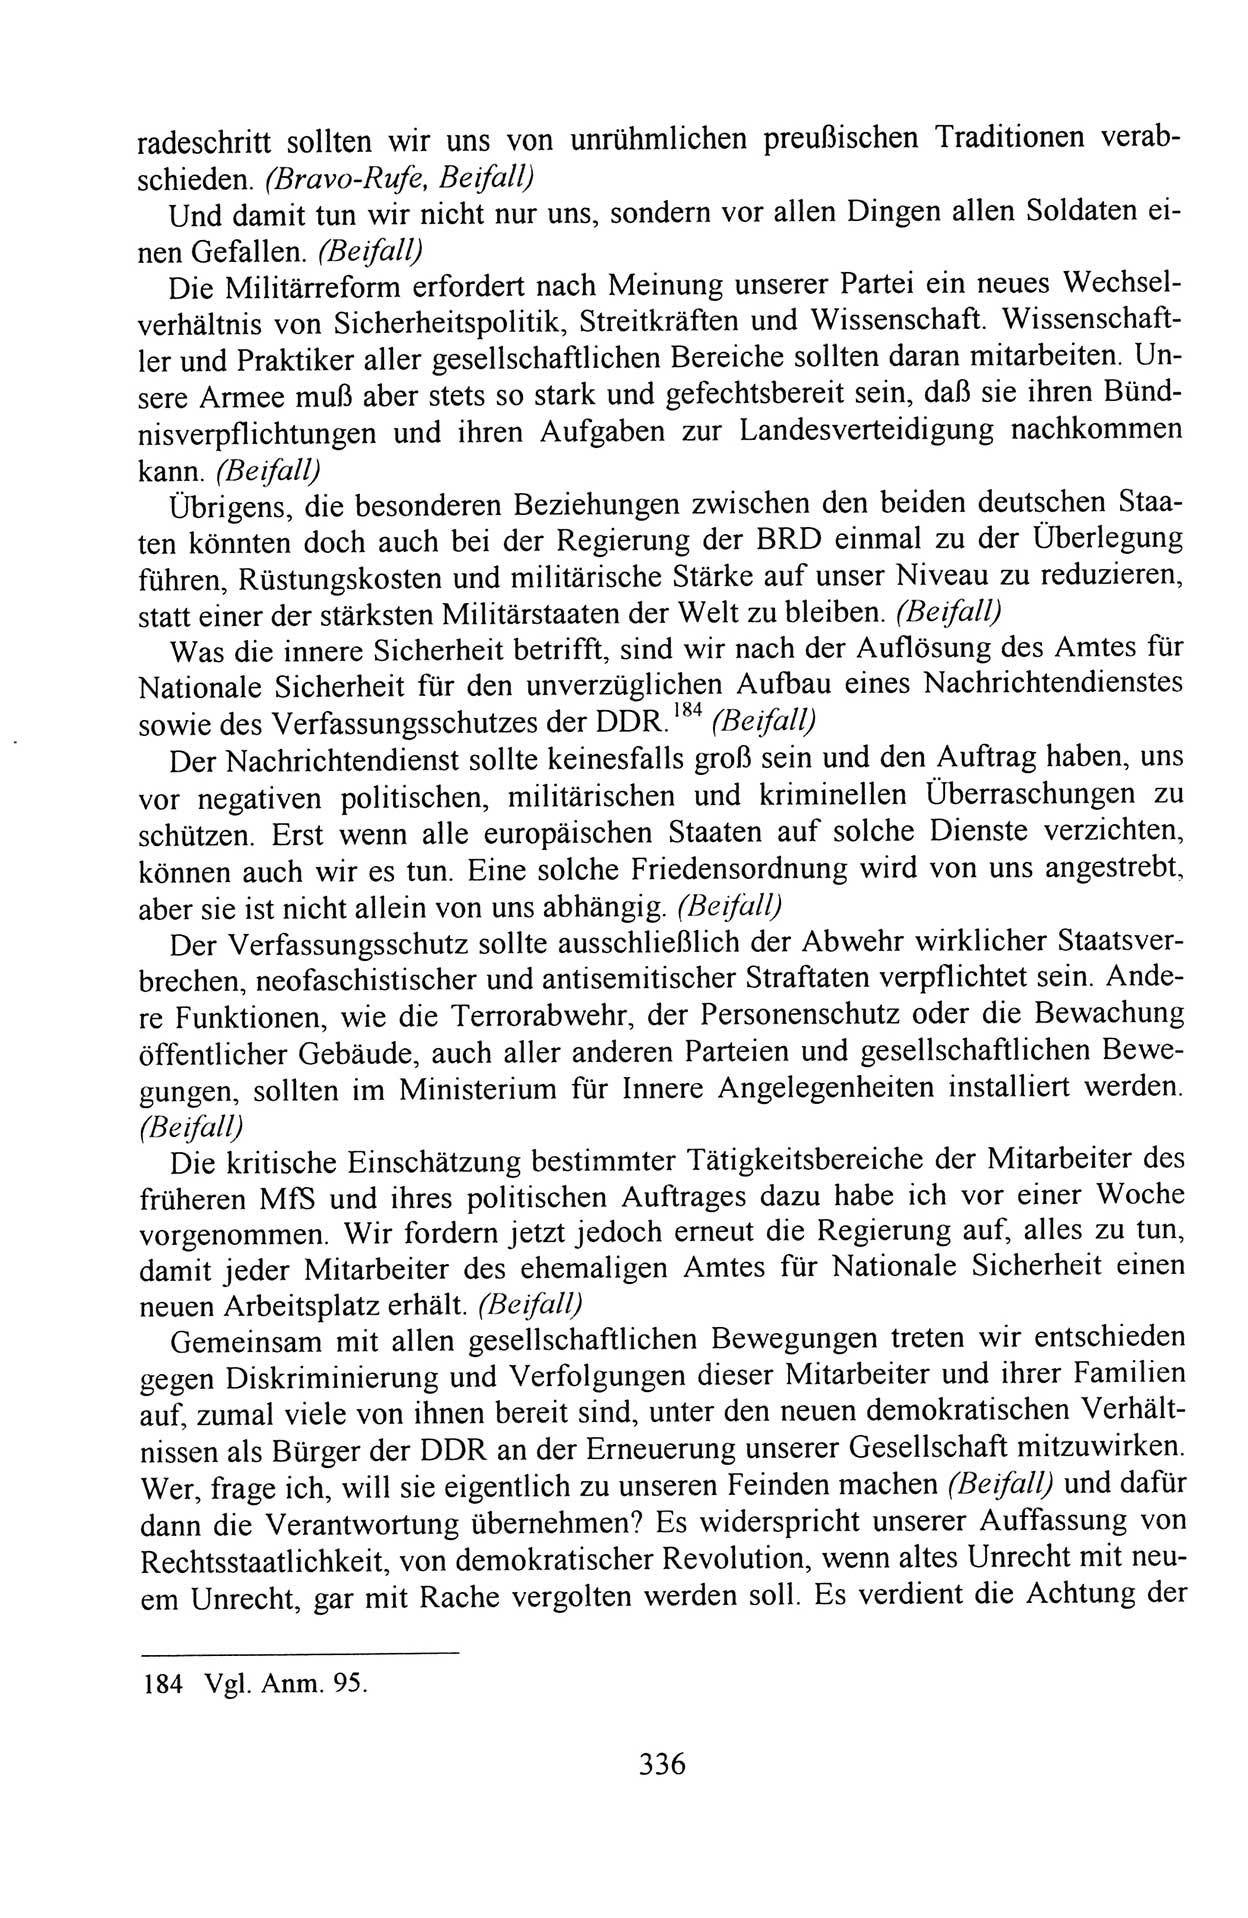 Außerordentlicher Parteitag der SED/PDS (Sozialistische Einheitspartei Deutschlands/Partei des Demokratischen Sozialismus) [Deutsche Demokratische Republik (DDR)], Protokoll der Beratungen am 8./9. und 16./17.12.1989 in Berlin 1989, Seite 336 (PT. SED/PDS DDR Prot. 1989, S. 336)